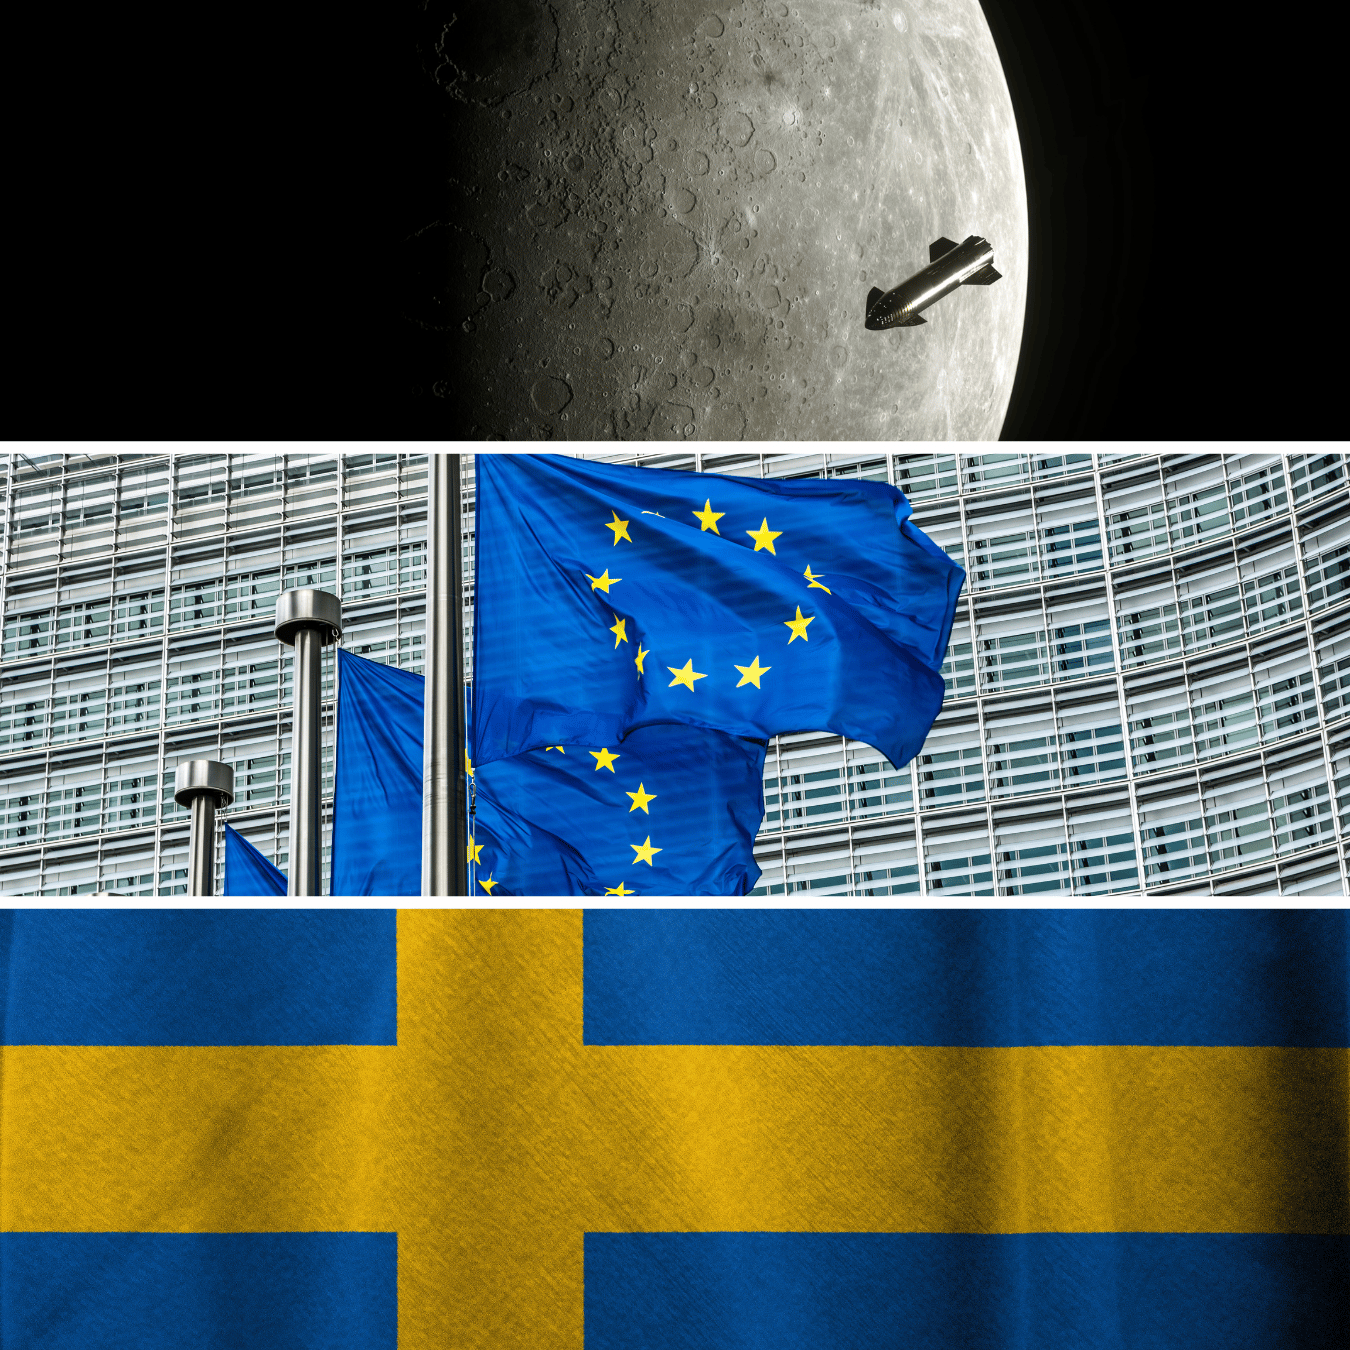 '1-1959 - A sonda soviética Luna 2 se torna a primeira espaçonave a alcançar a Lua, realizando um pouso bem-sucedido. 2-1992 - O Tratado de Maastricht é assinado, estabelecendo a União Europeia e iniciando um processo de integração política e econômica entre os países membros. 3- 2003 - A Suécia realiza um referendo para decidir se aderir à zona do euro. A maioria dos eleitores vota contra a adesão à moeda comum.' - 12 de setembro